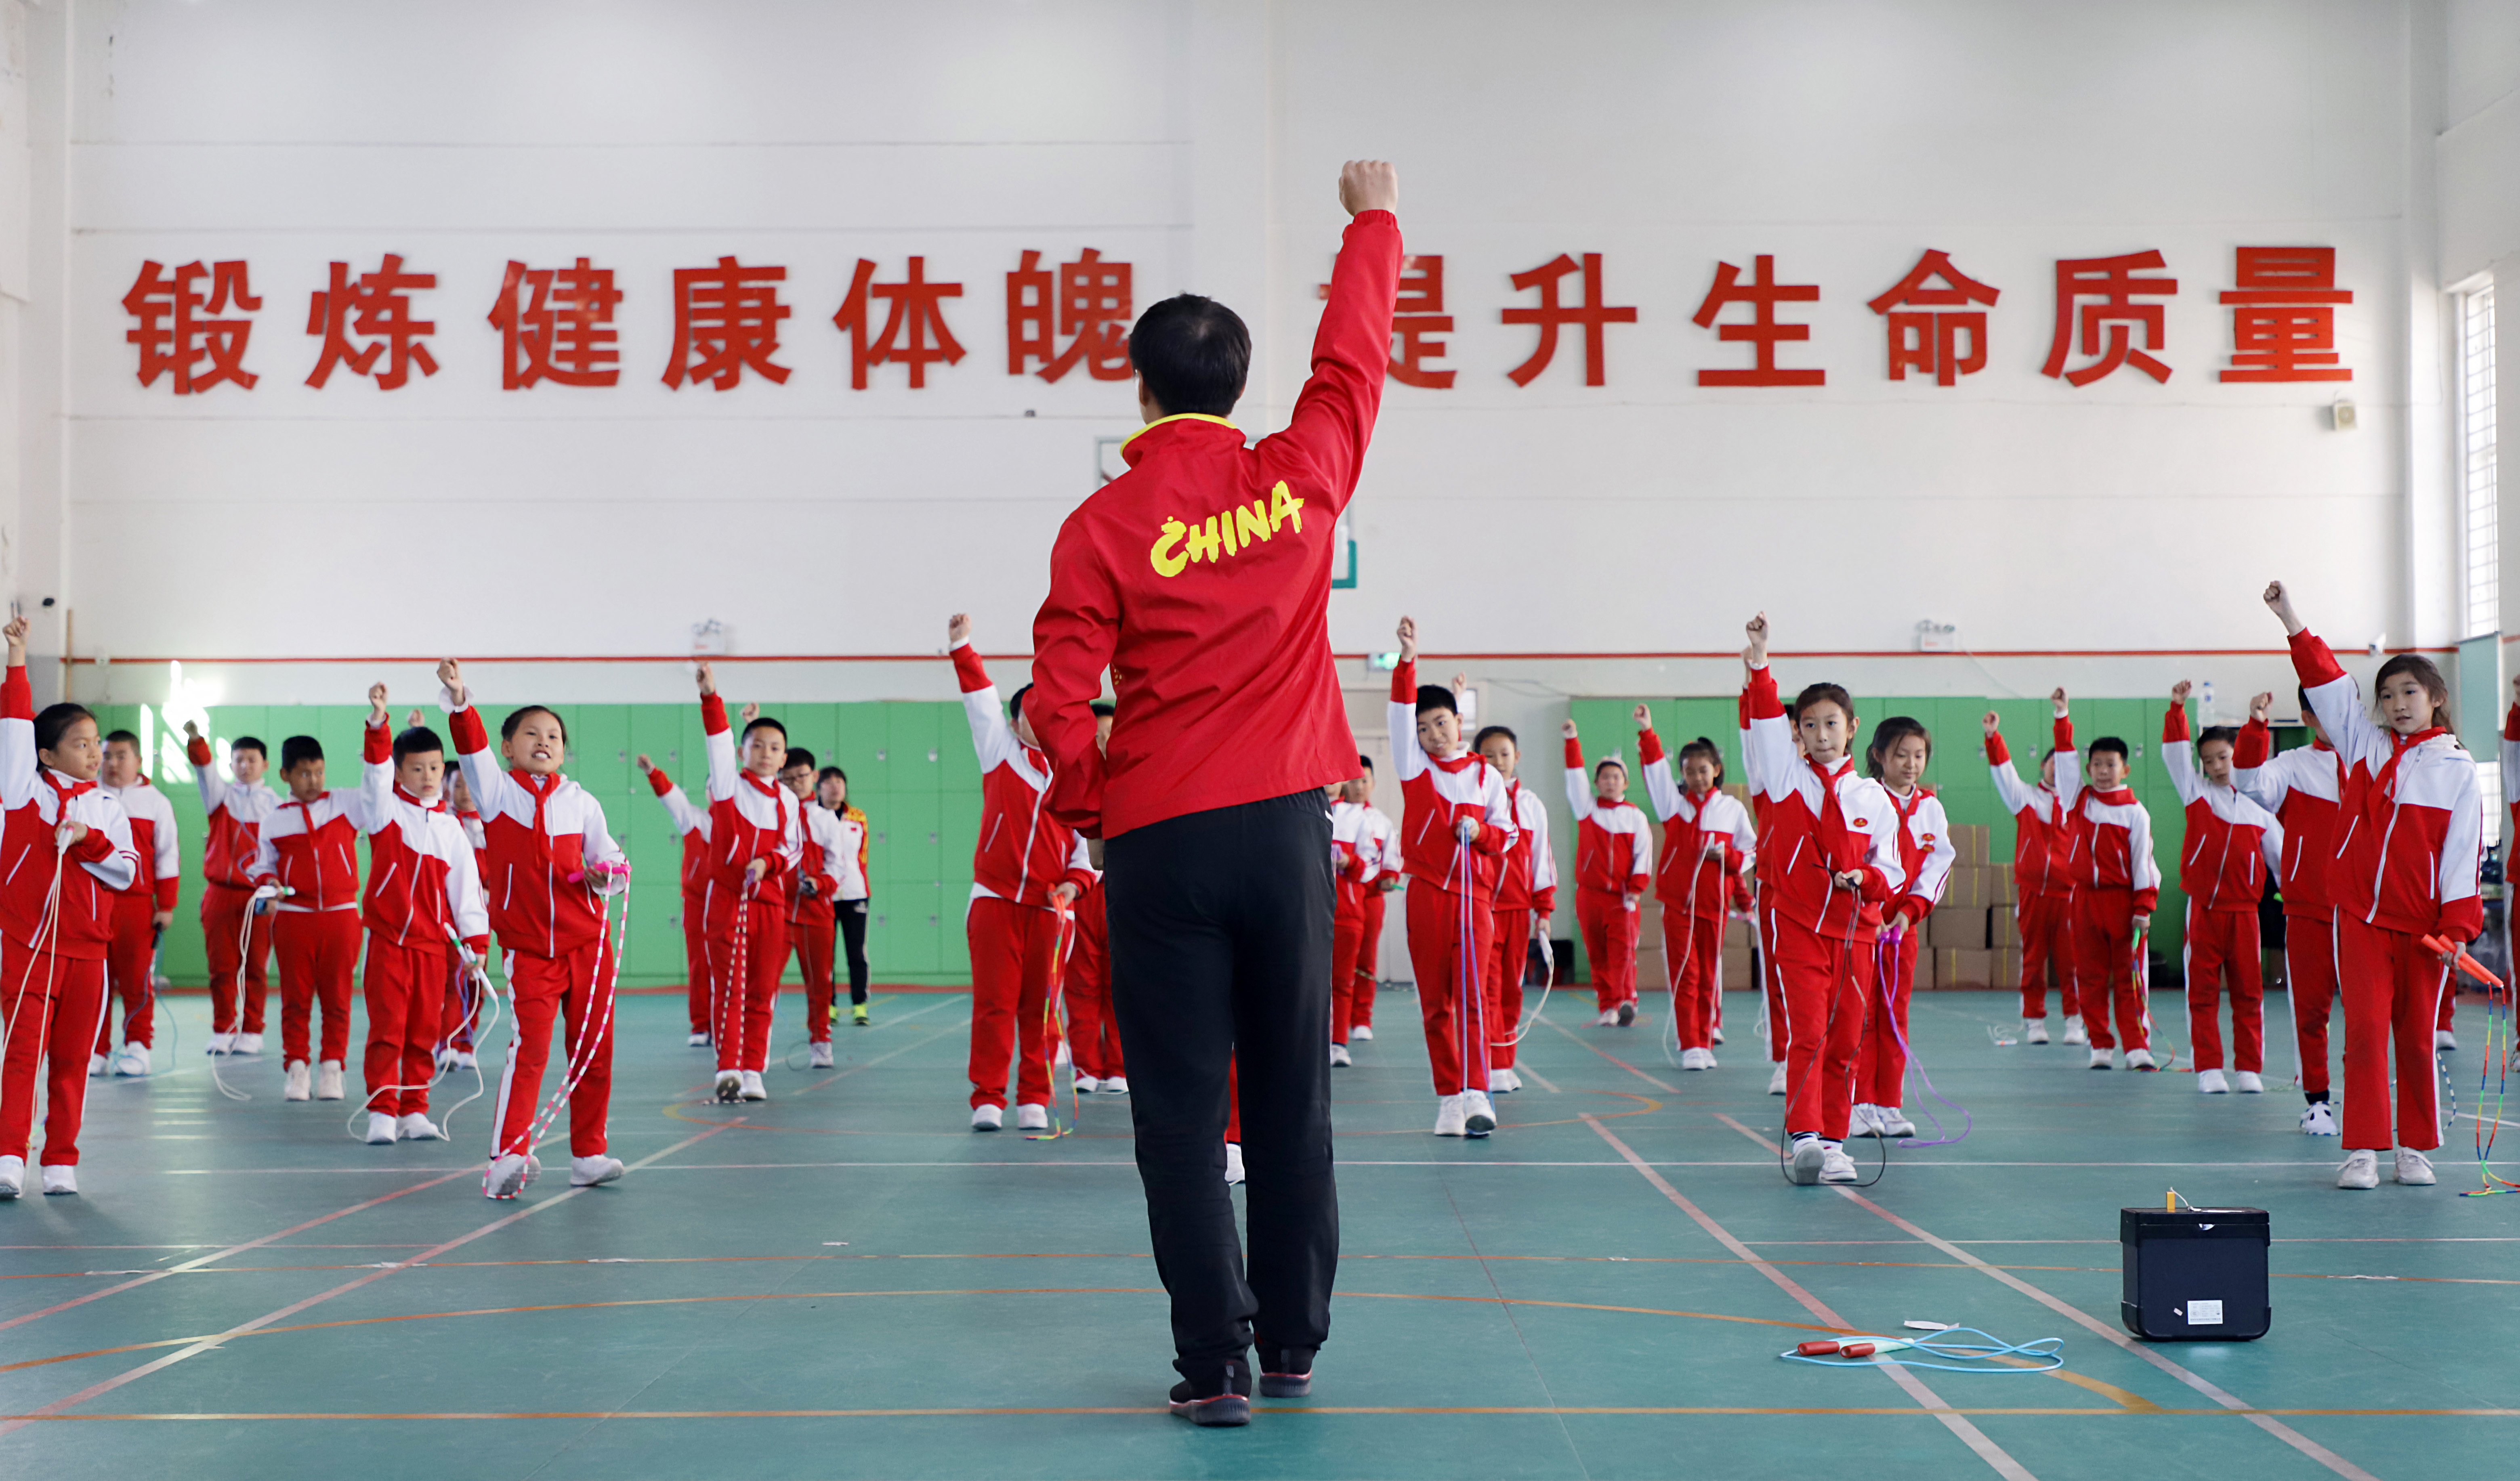 нацпроект Китая «Спорт для народа»